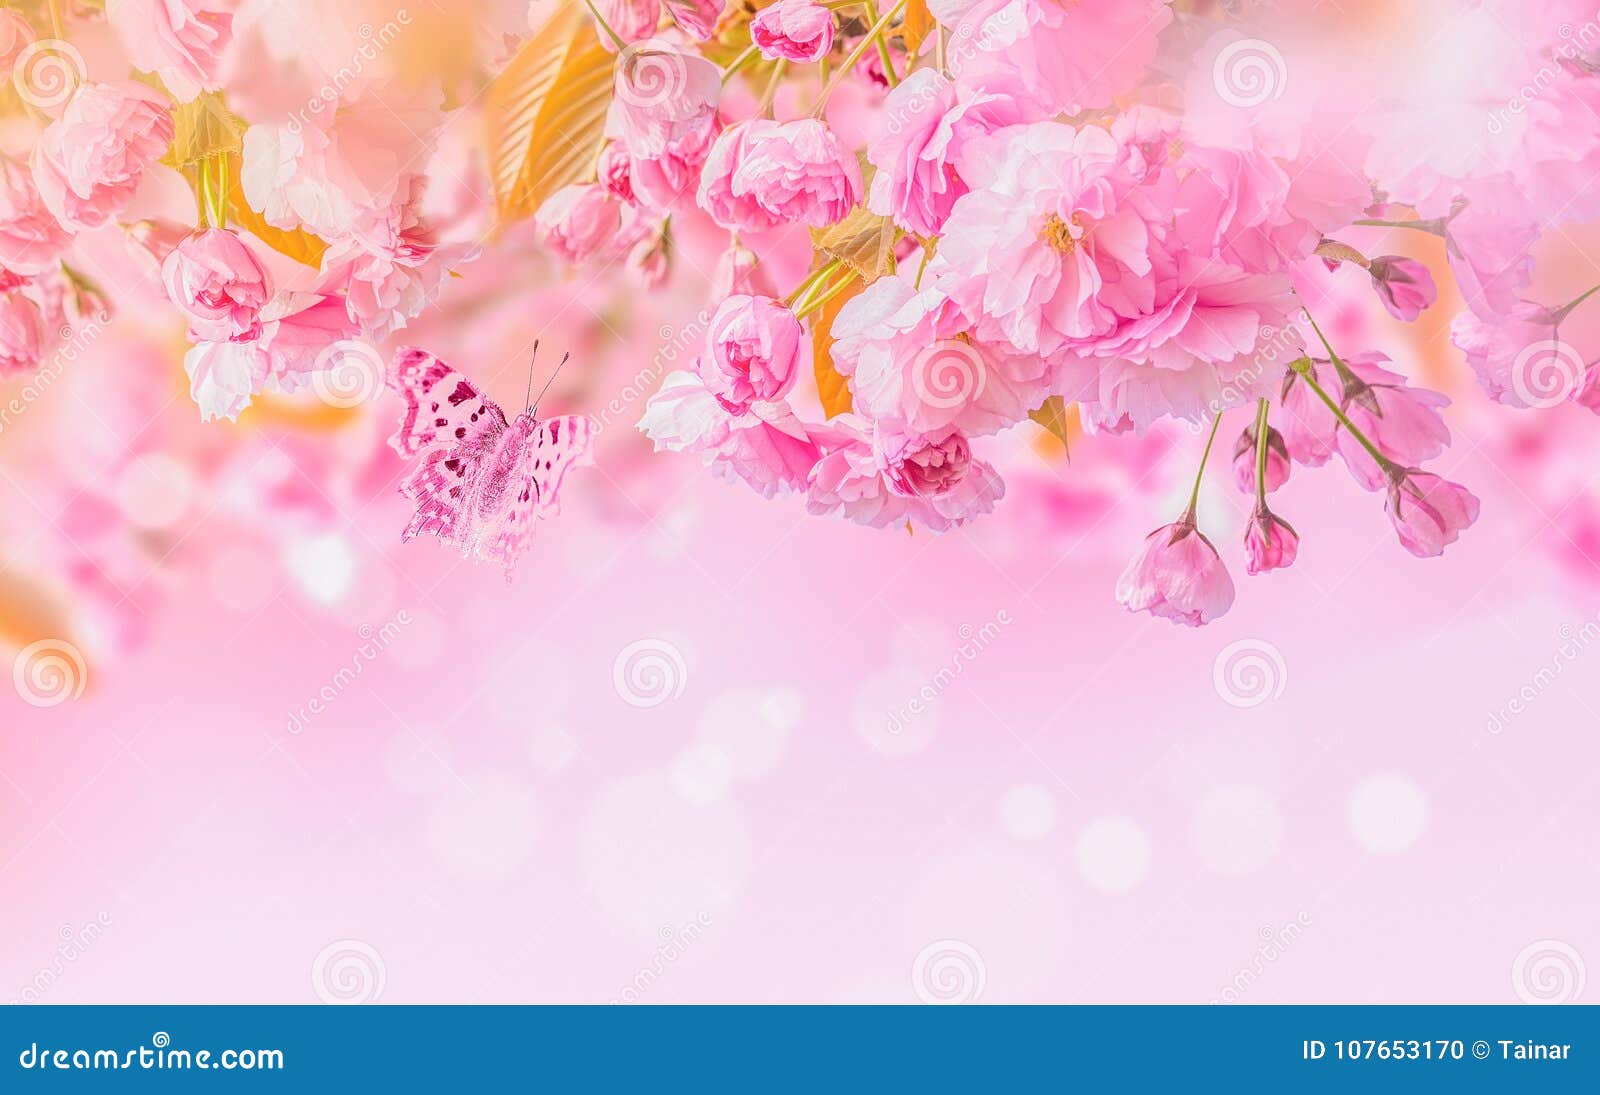 sakura flower cherry blossom.